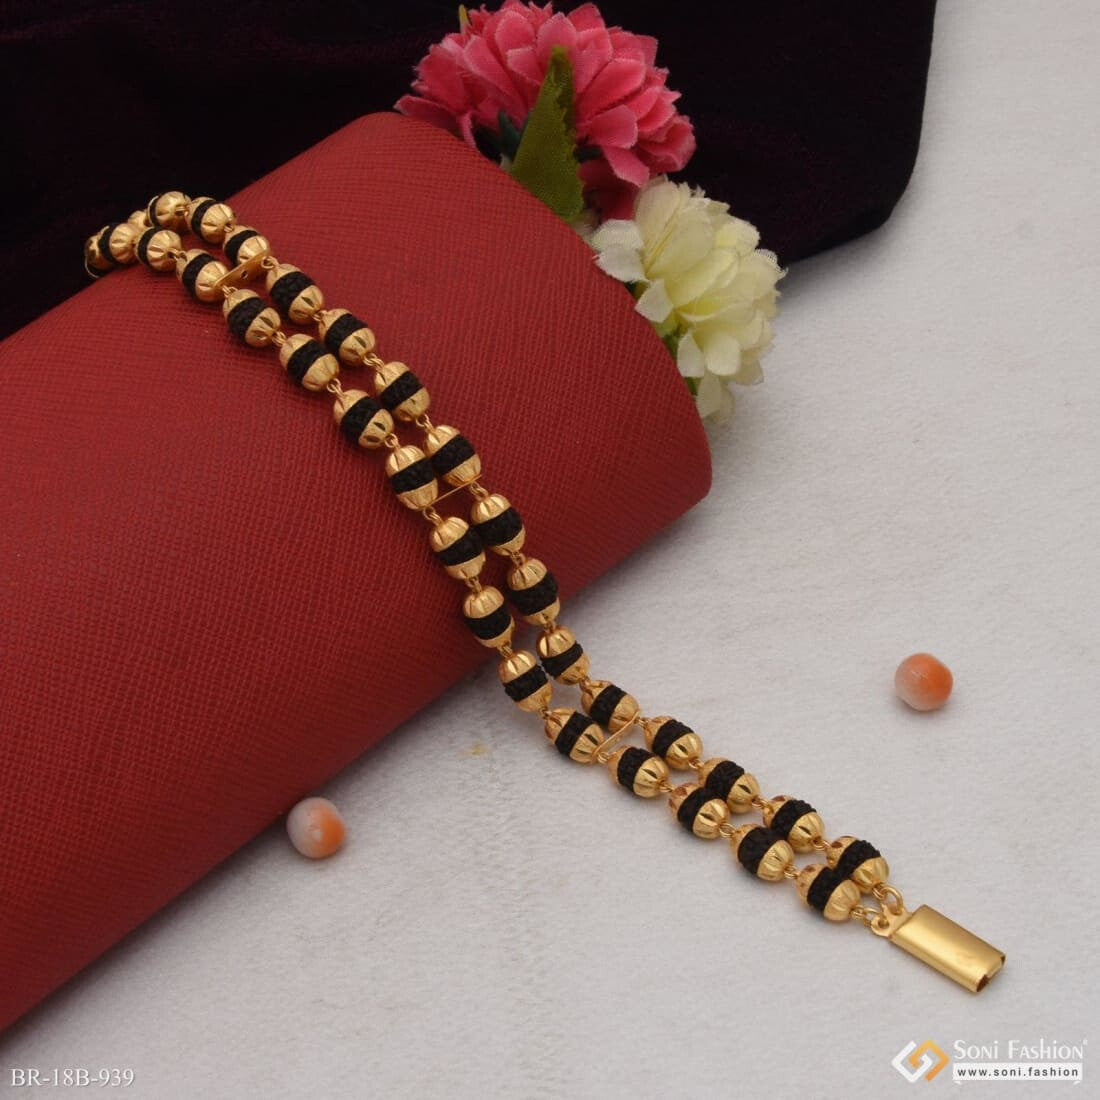 2 Line Artisanal Design Gold Plated Rudraksha Bracelet For Men - Style  B872, Rudraksh Bracelet, रुद्राक्ष ब्रेसलेट - Soni Fashion, Rajkot | ID:  26082585673